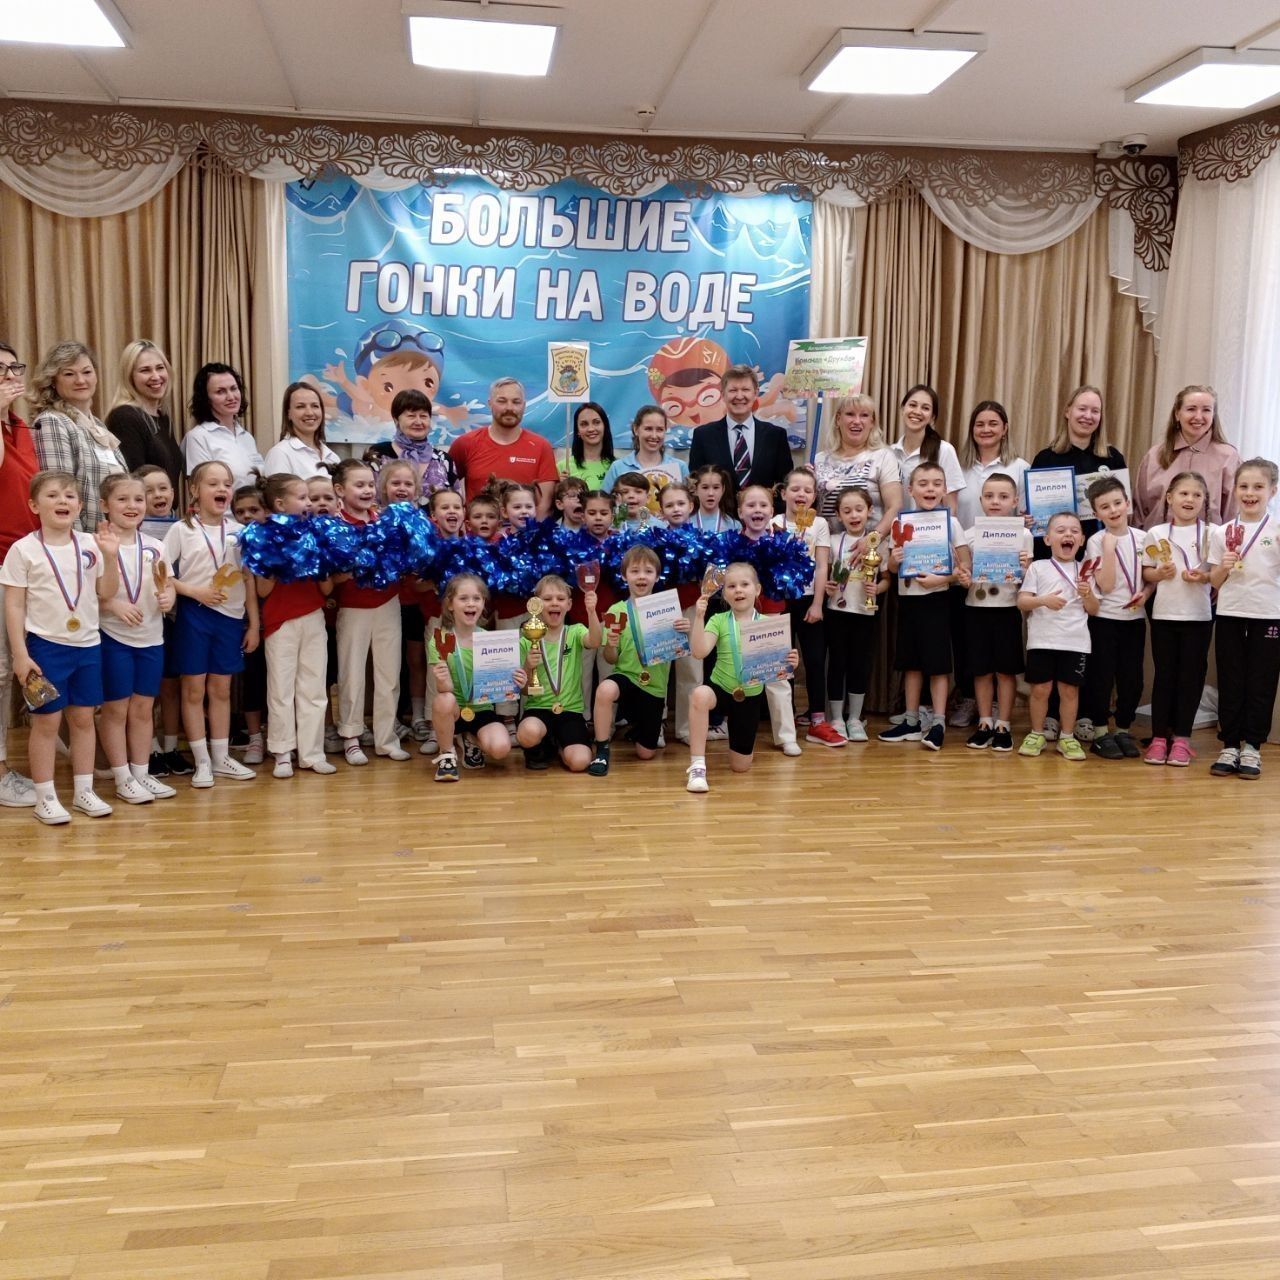 «Большие гонки на воде»: праздник спорта для детей прошел в Петроградском районе